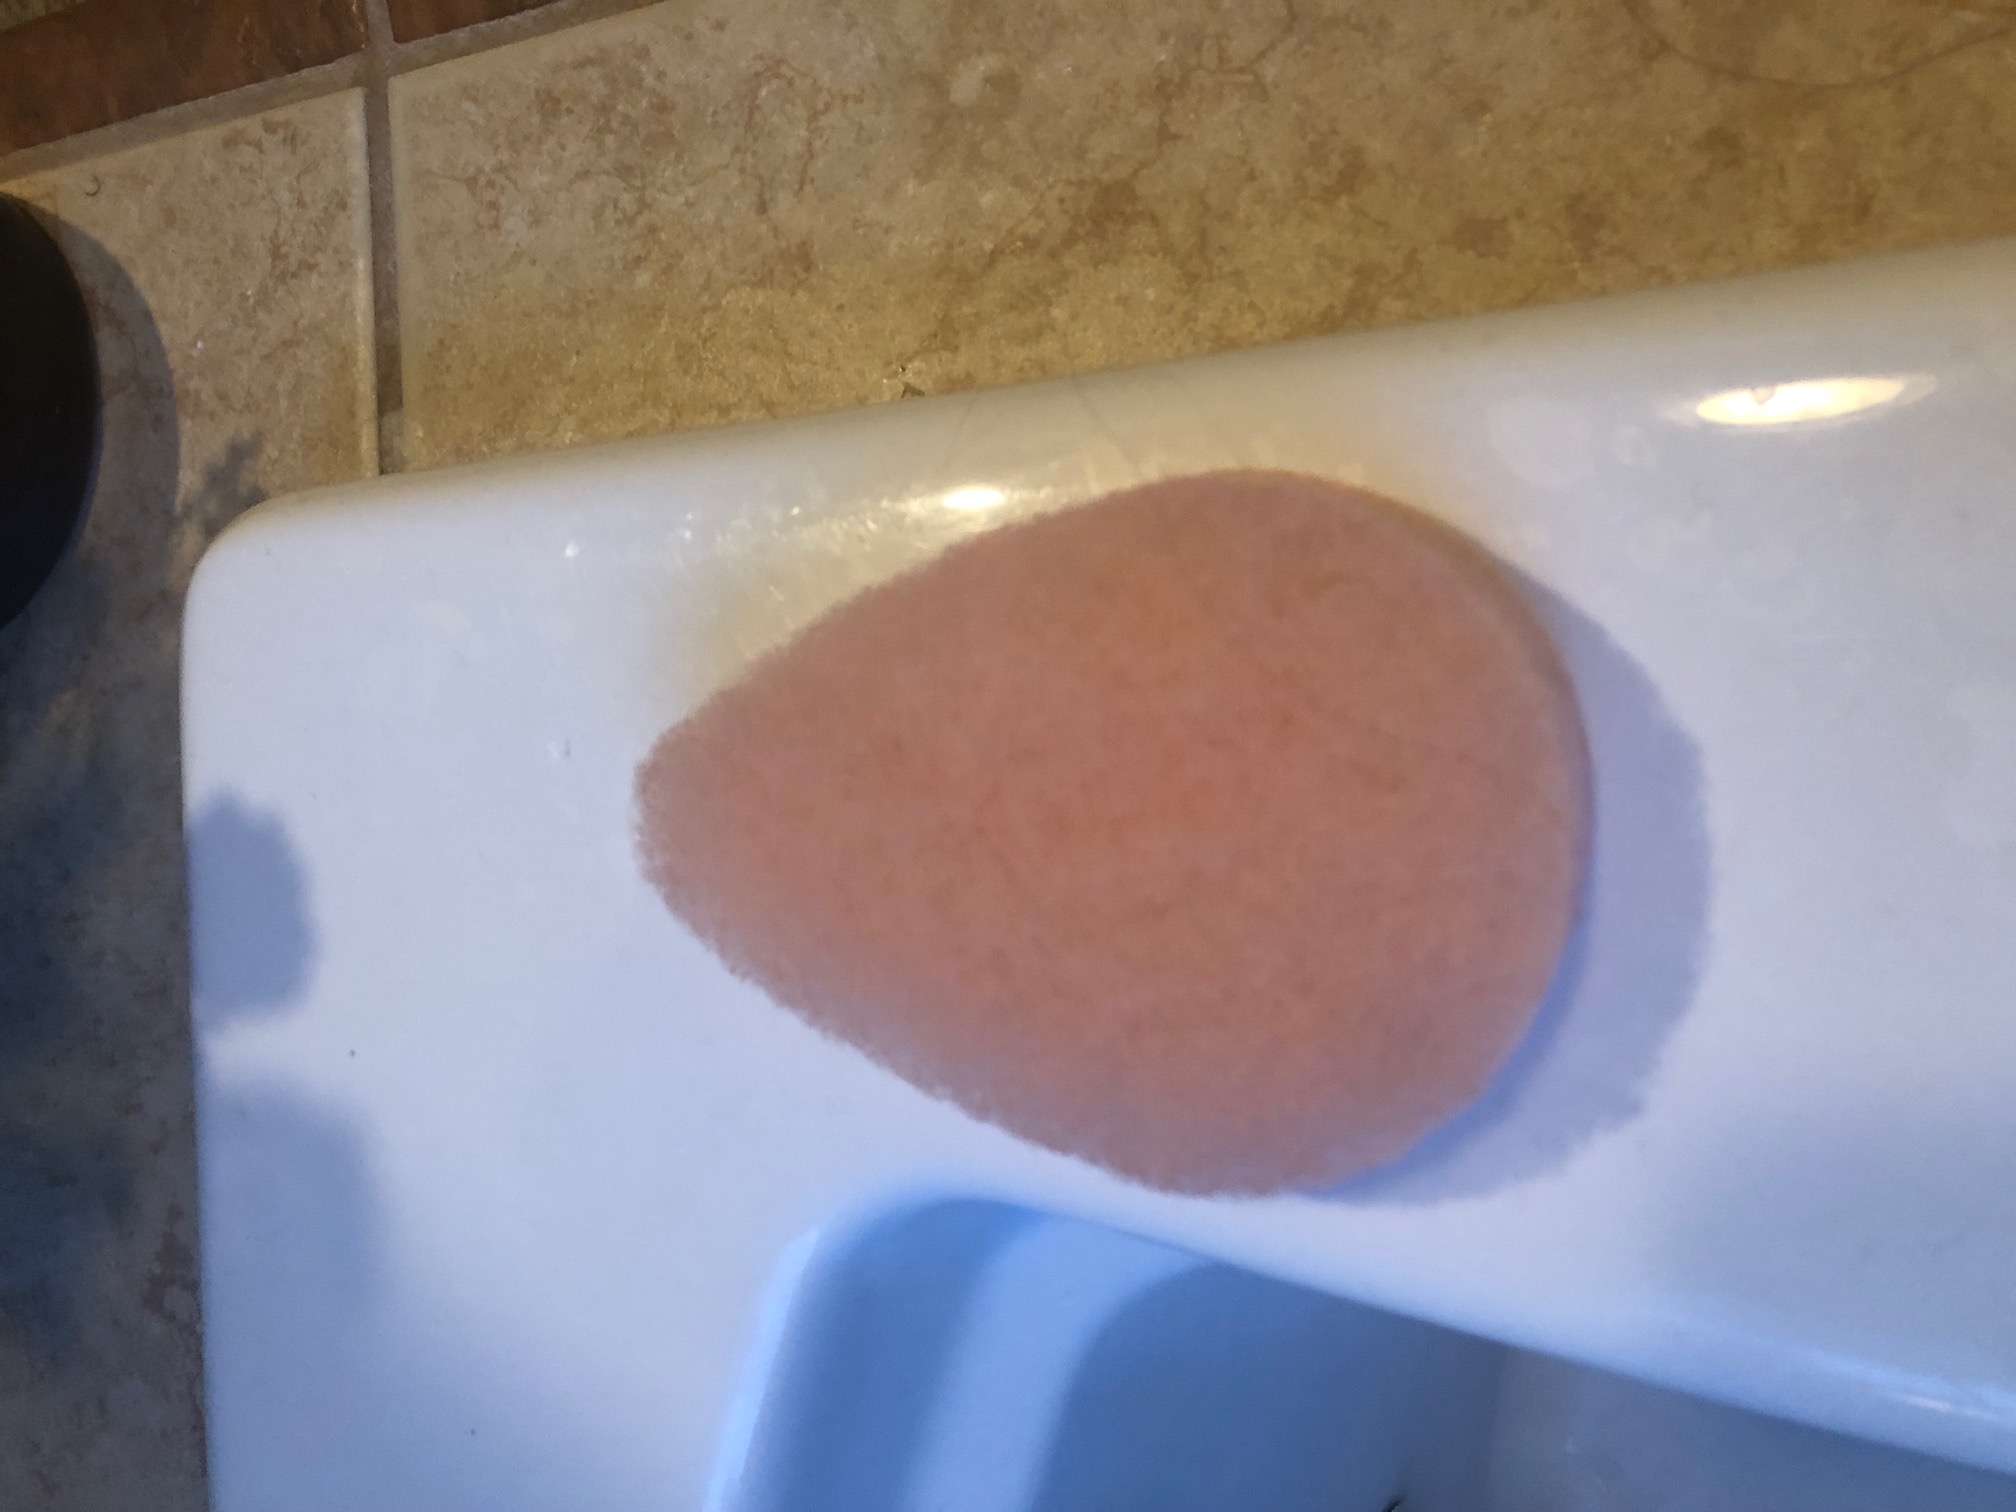 Exfoliation Pad on Side of Bathtub